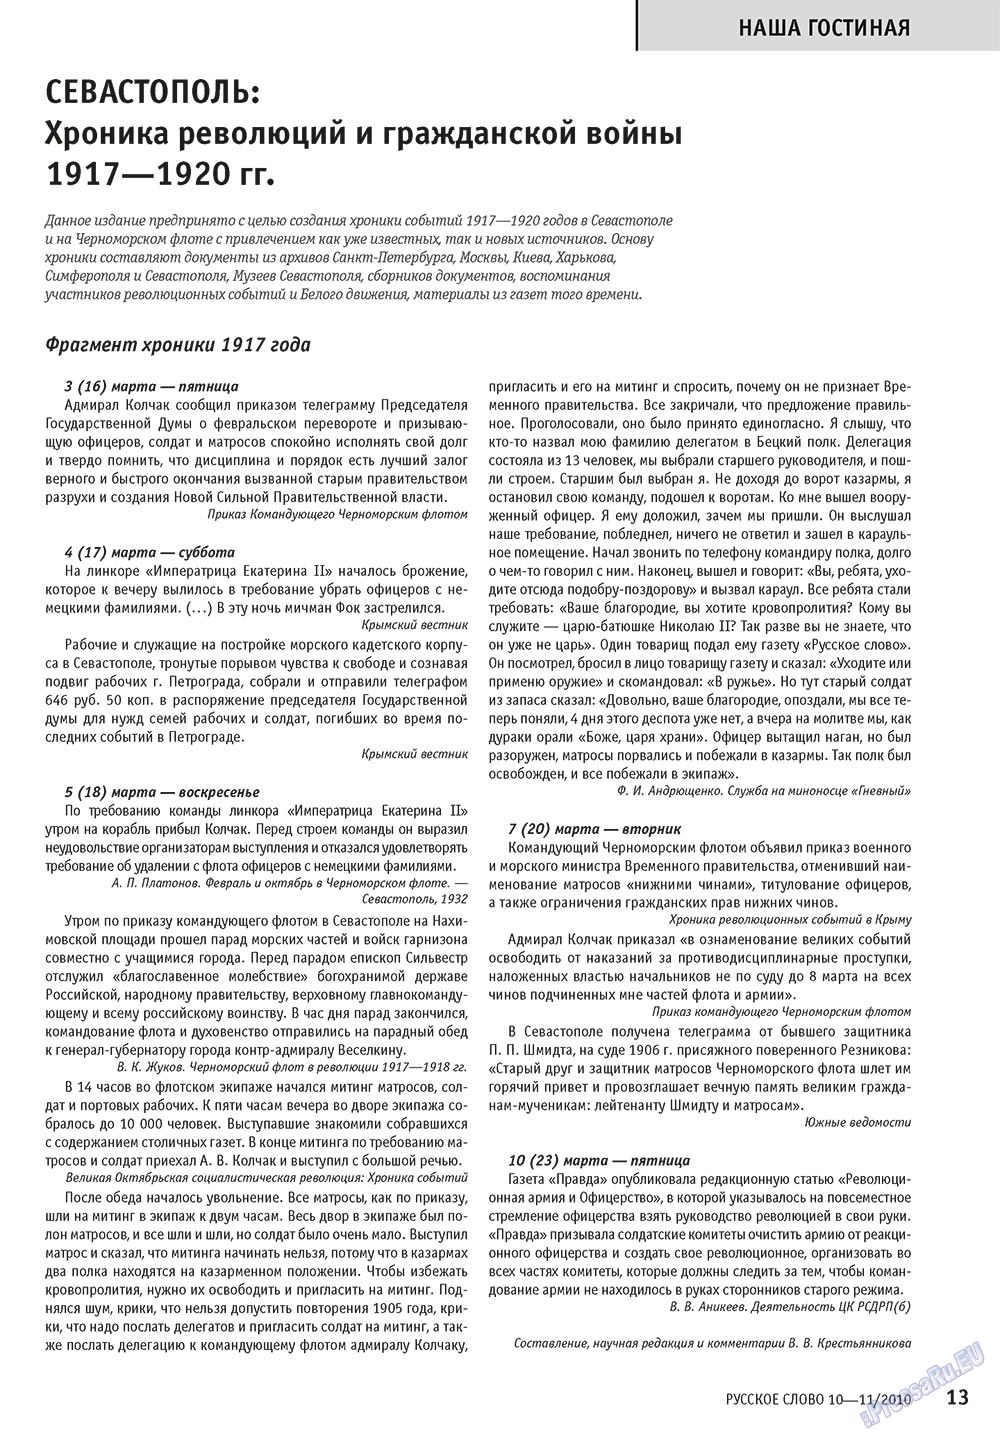 Русское слово, журнал. 2010 №10 стр.15